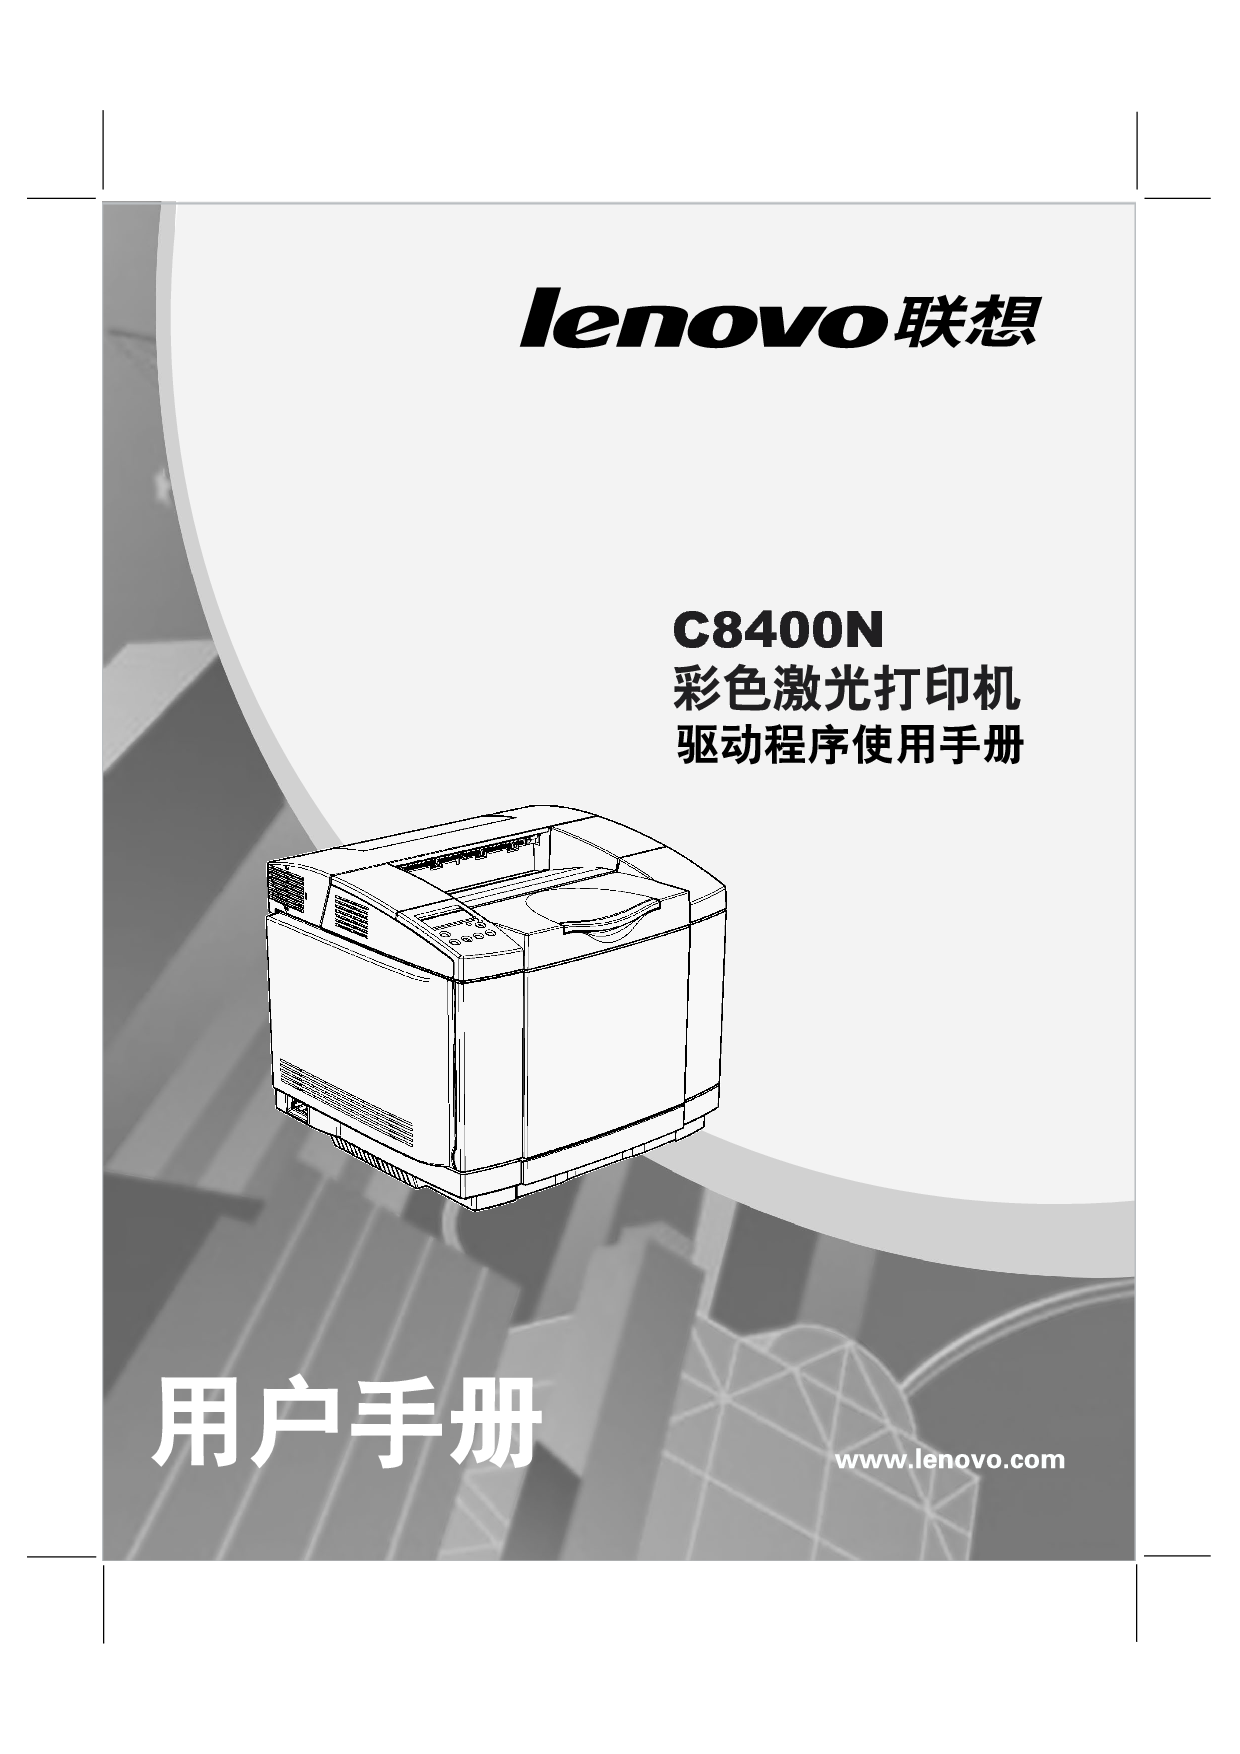 联想 Lenovo C8400N 驱动程序 用户手册 封面